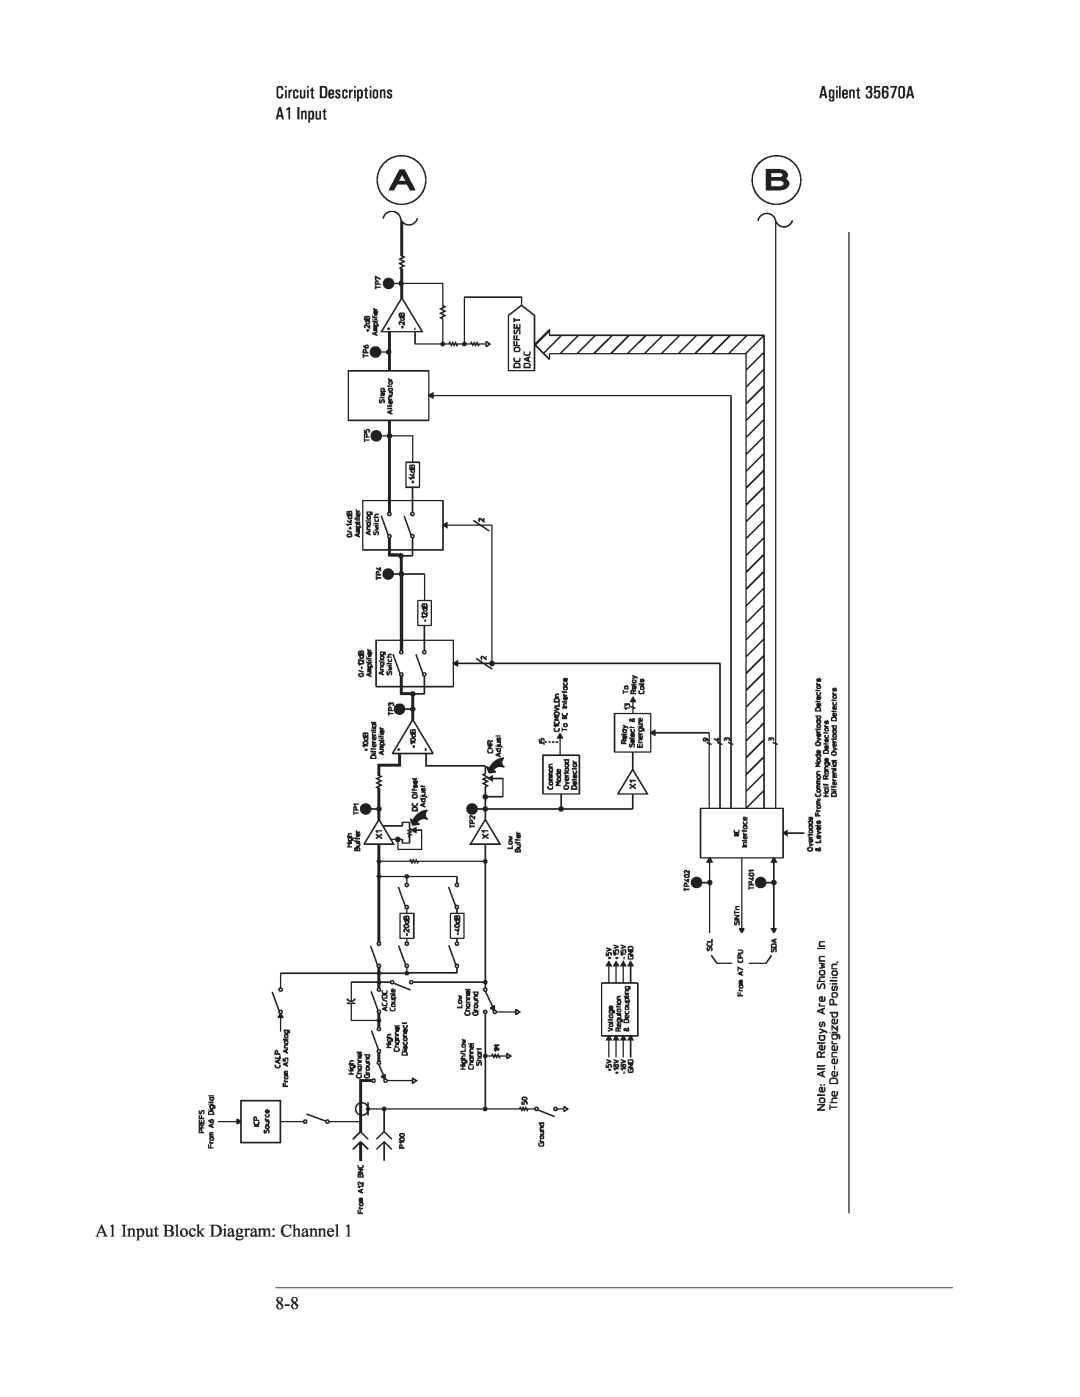 Agilent Technologies 35670-90066 manual A1 Input Block Diagram: Channel, Circuit Descriptions, Agilent 35670A 